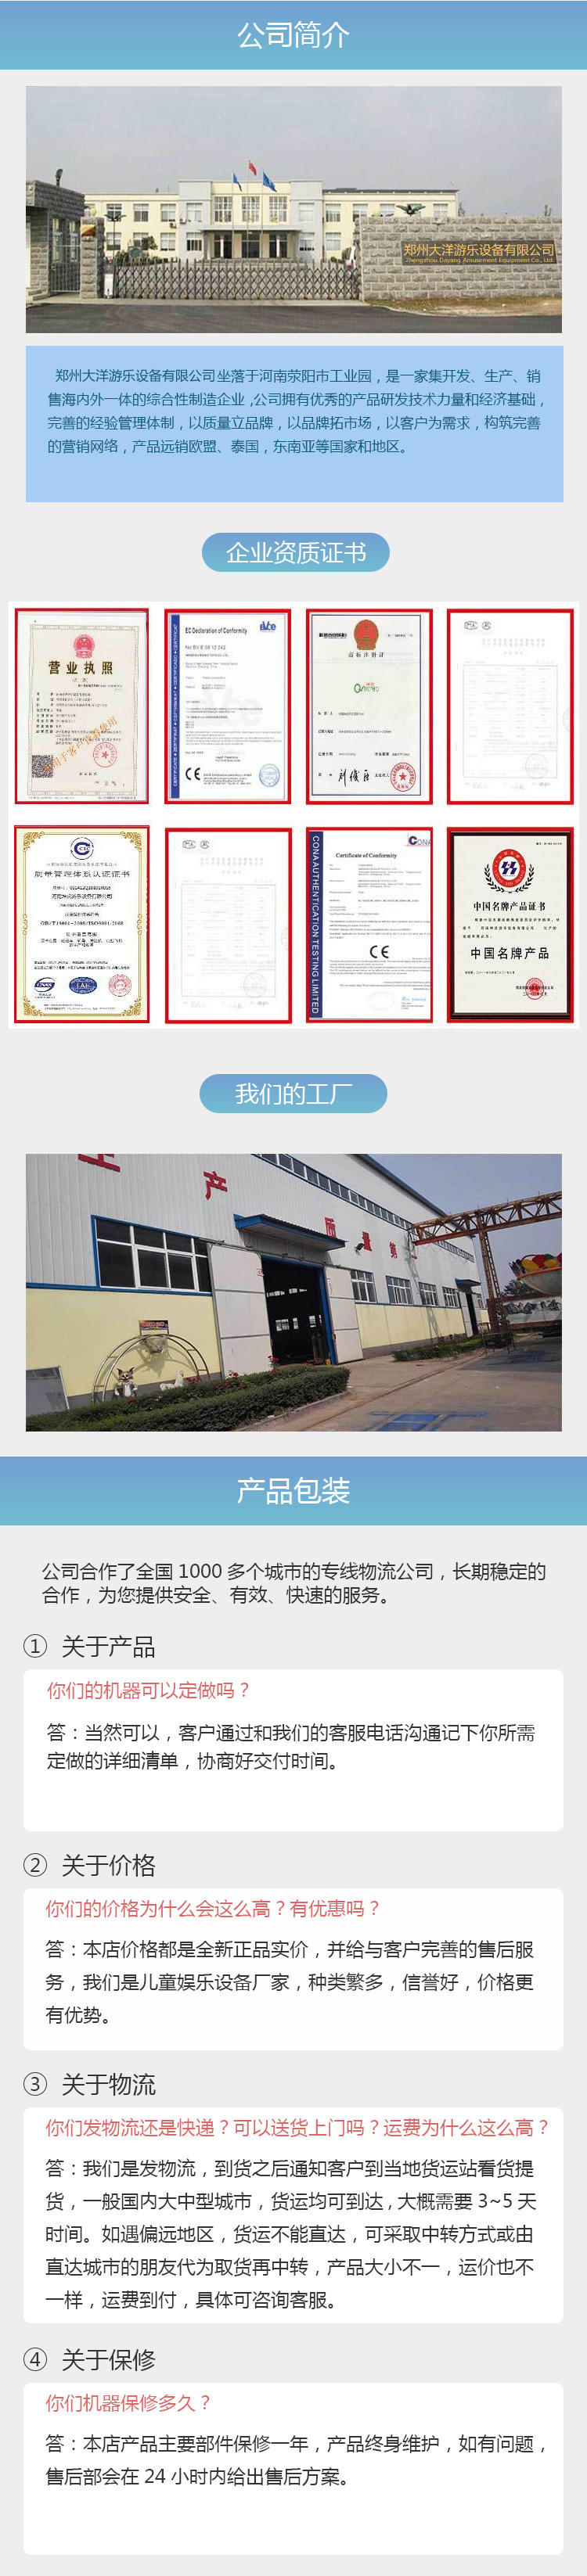 销售火爆滑行龙项目_厂家直销16座滑行龙_郑州大洋专业生产滑行龙示例图19